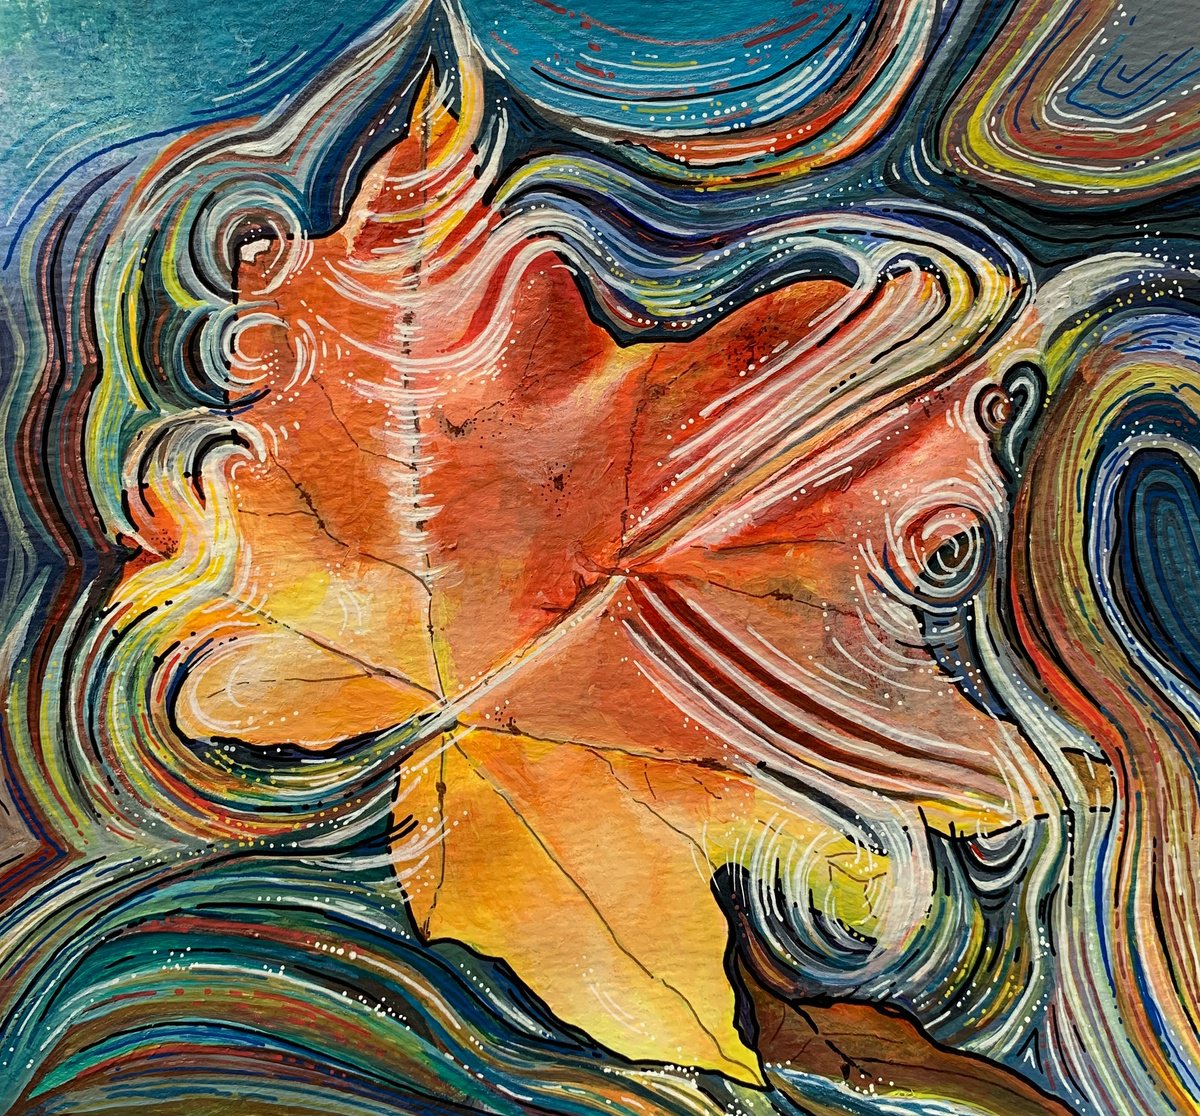 Autumn swirl by Karen Elaine Evans